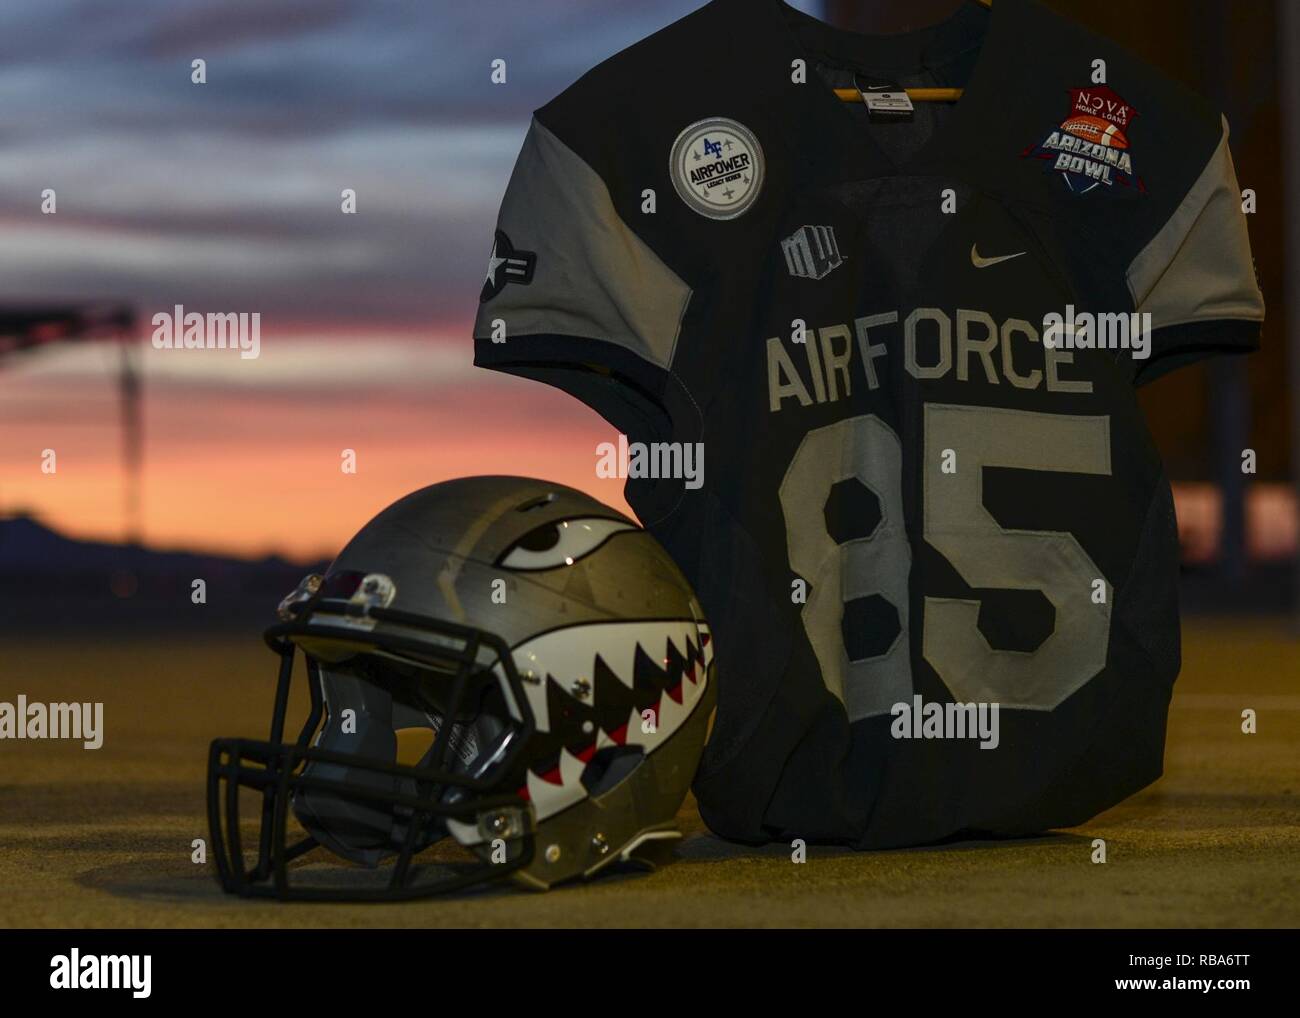 Air Force Academy football team helmet 